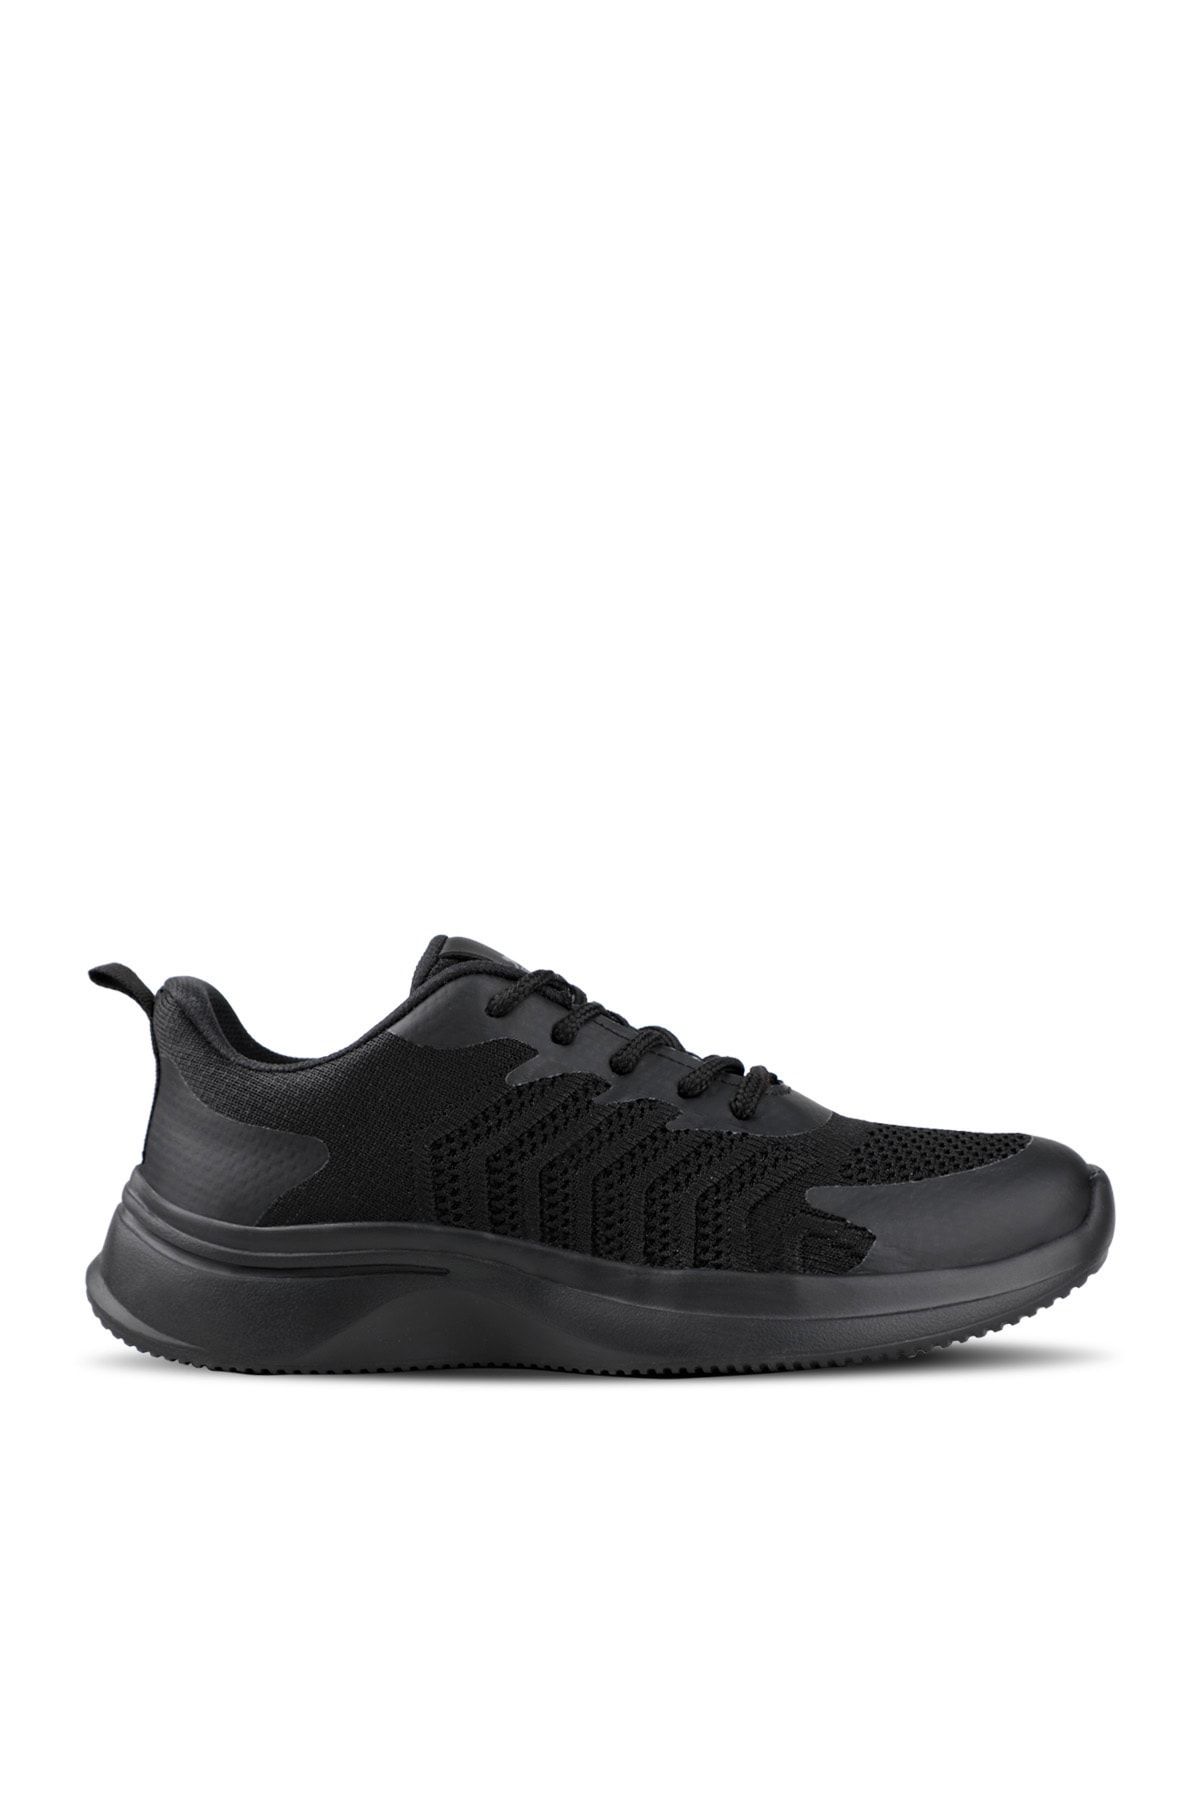 Slazenger Act Sneaker Kadın Ayakkabı Siyah / Siyah